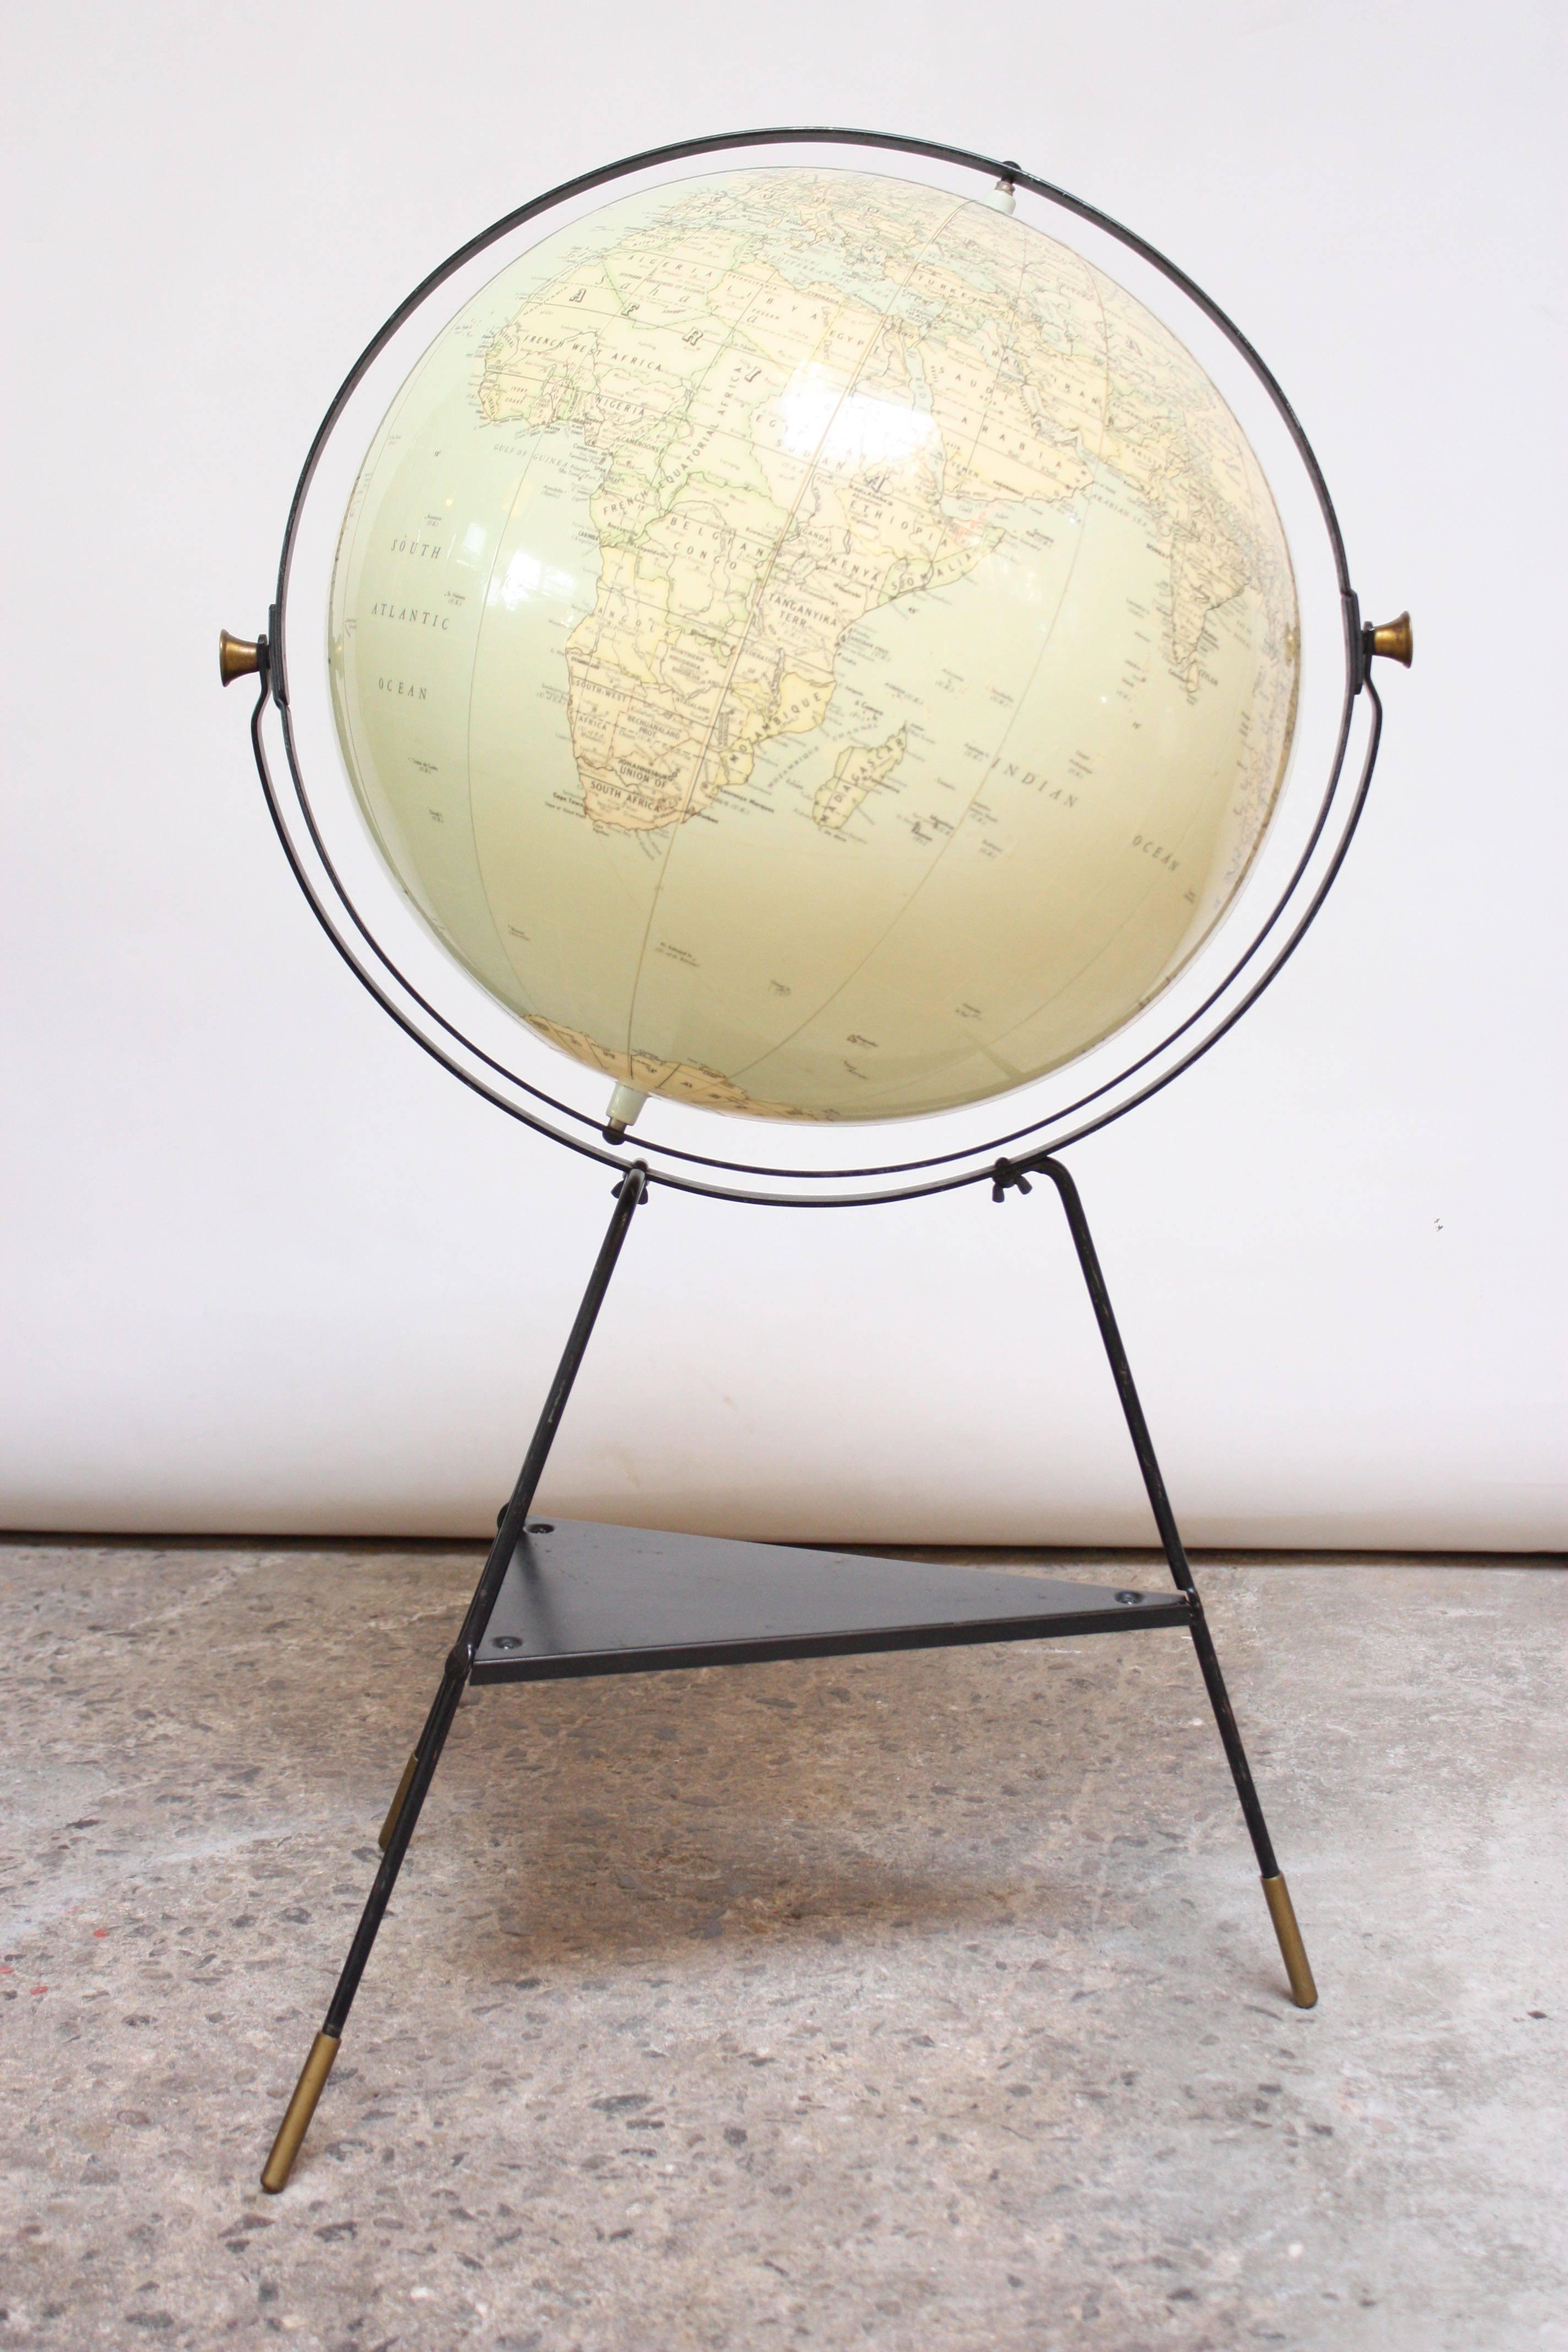 Globe international de Hammond (vers 1955) composé d'un globe gonflable sur une base tripode en métal peint. Les images et la police sont à grande échelle et très lisibles. Aussi durable qu'un ballon de plage, ce globe en vinyle est